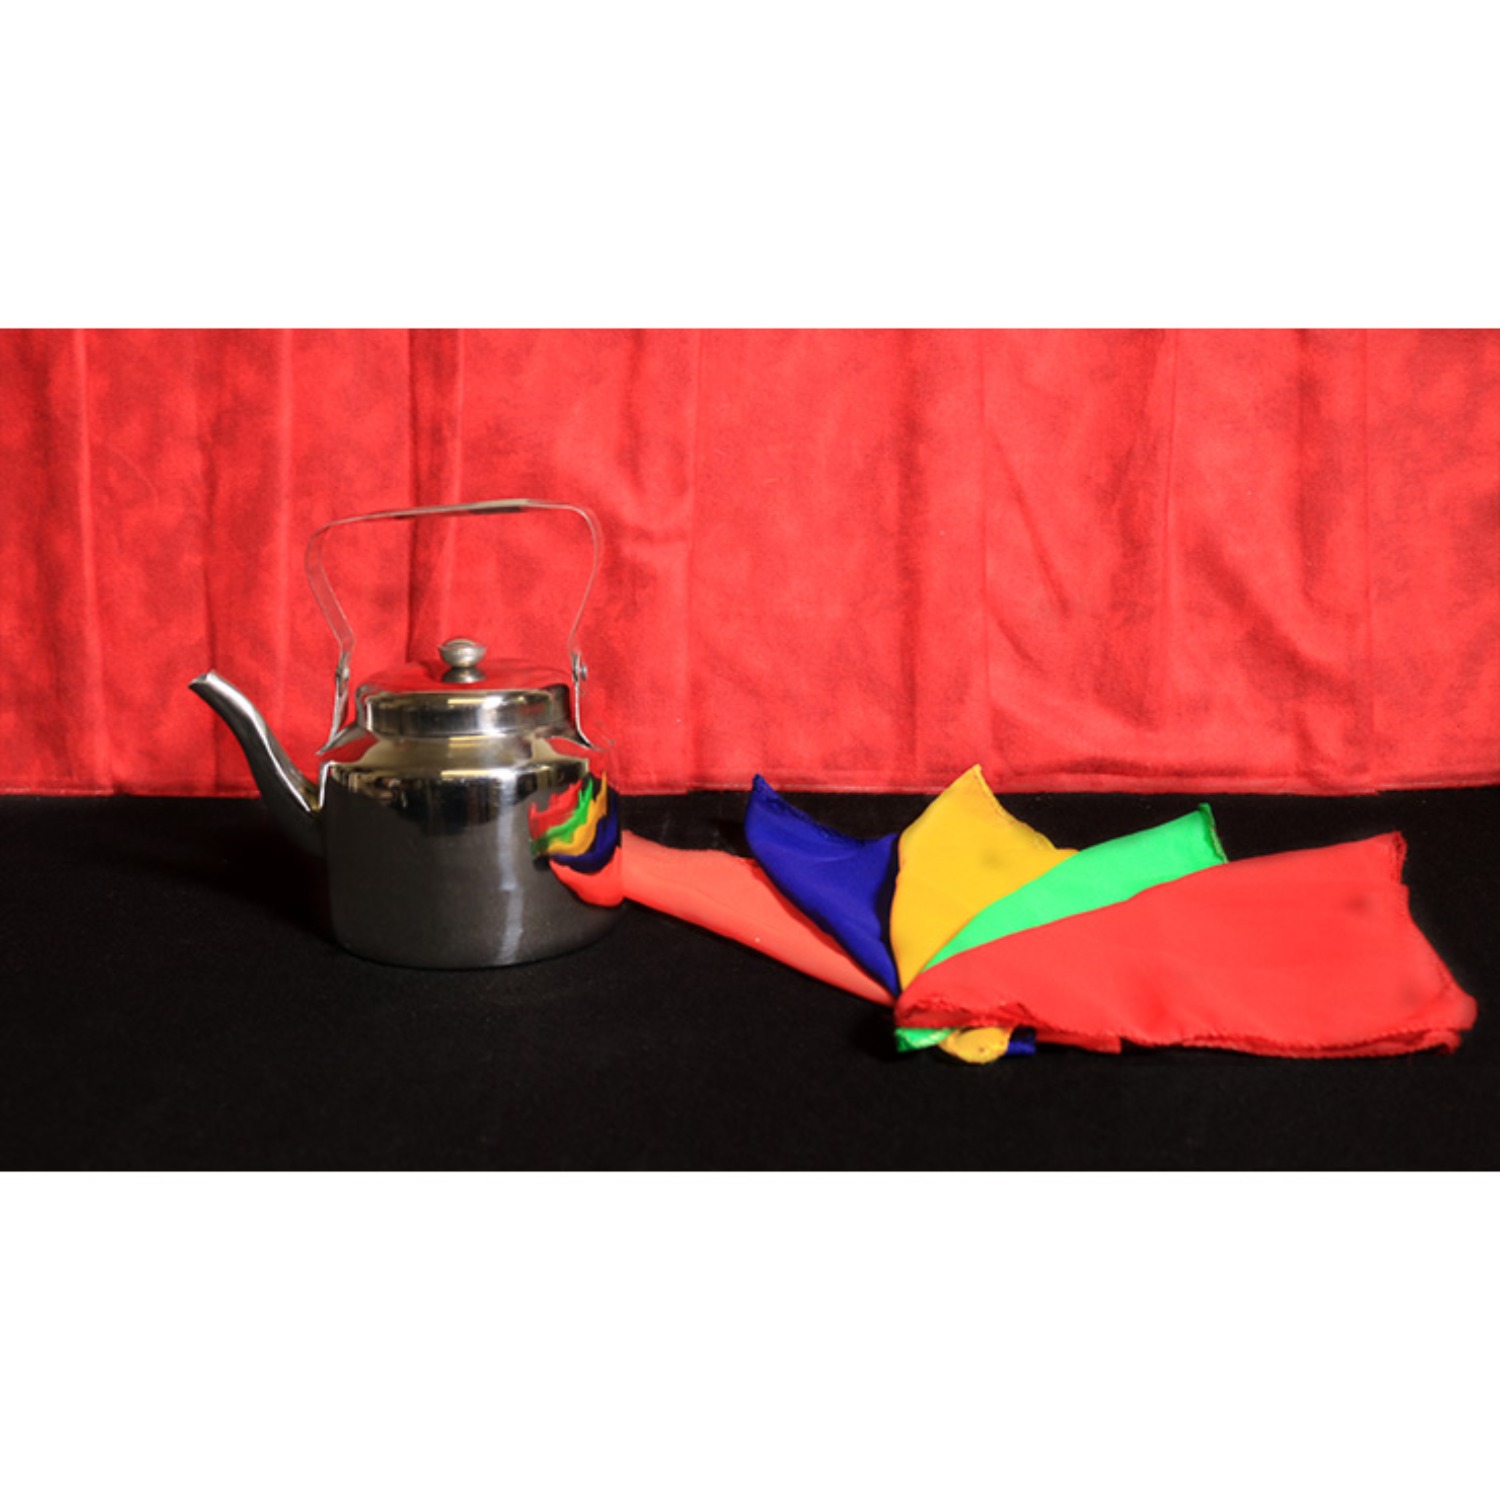 [매직 티포트]Magic Tea Pot (Economy) by Mr. Magic - 단 한 개의 주전자에서 다양한 종류의 음료가 나옵니다.